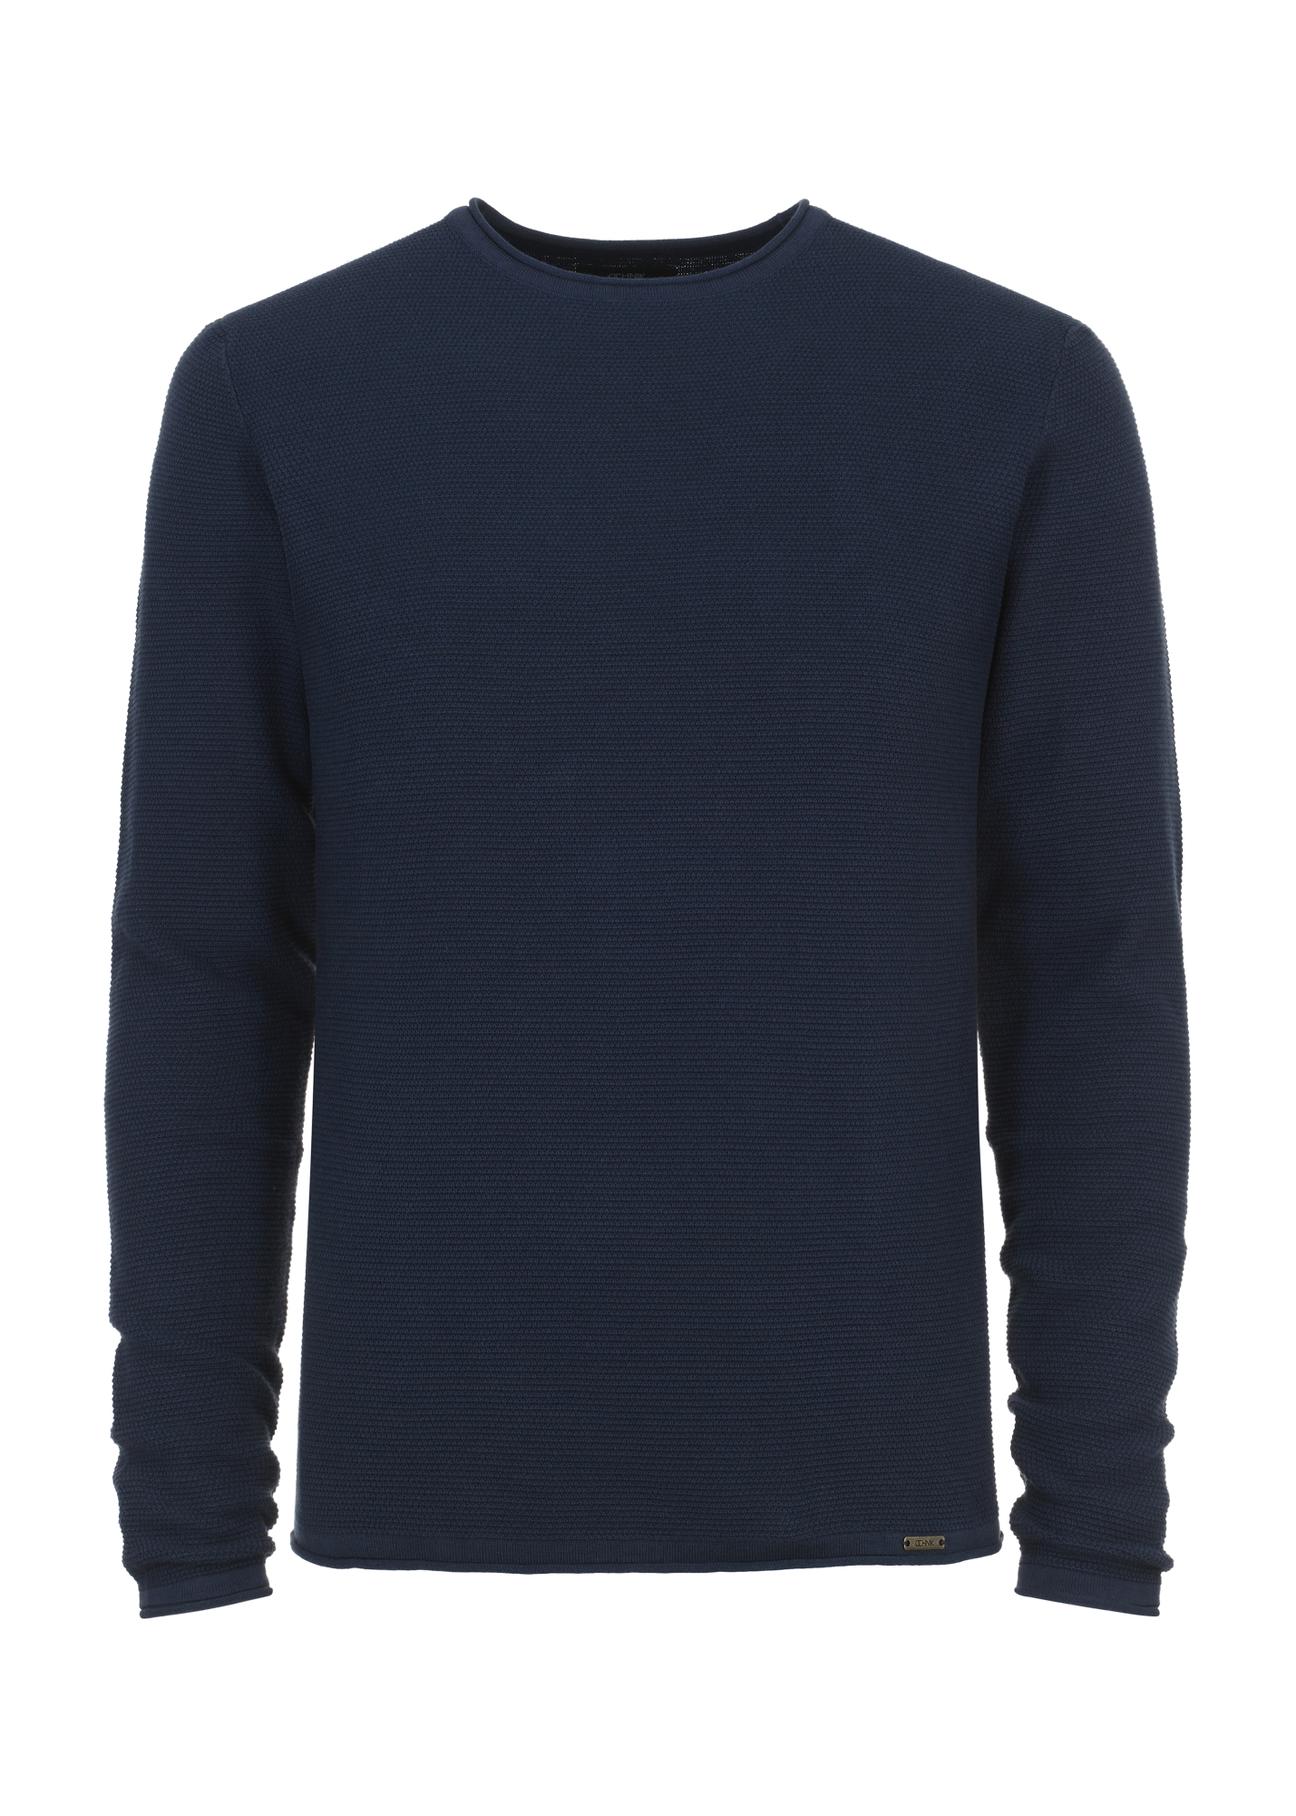 Granatowy sweter męski basic SWEMT-0128-69(W24)